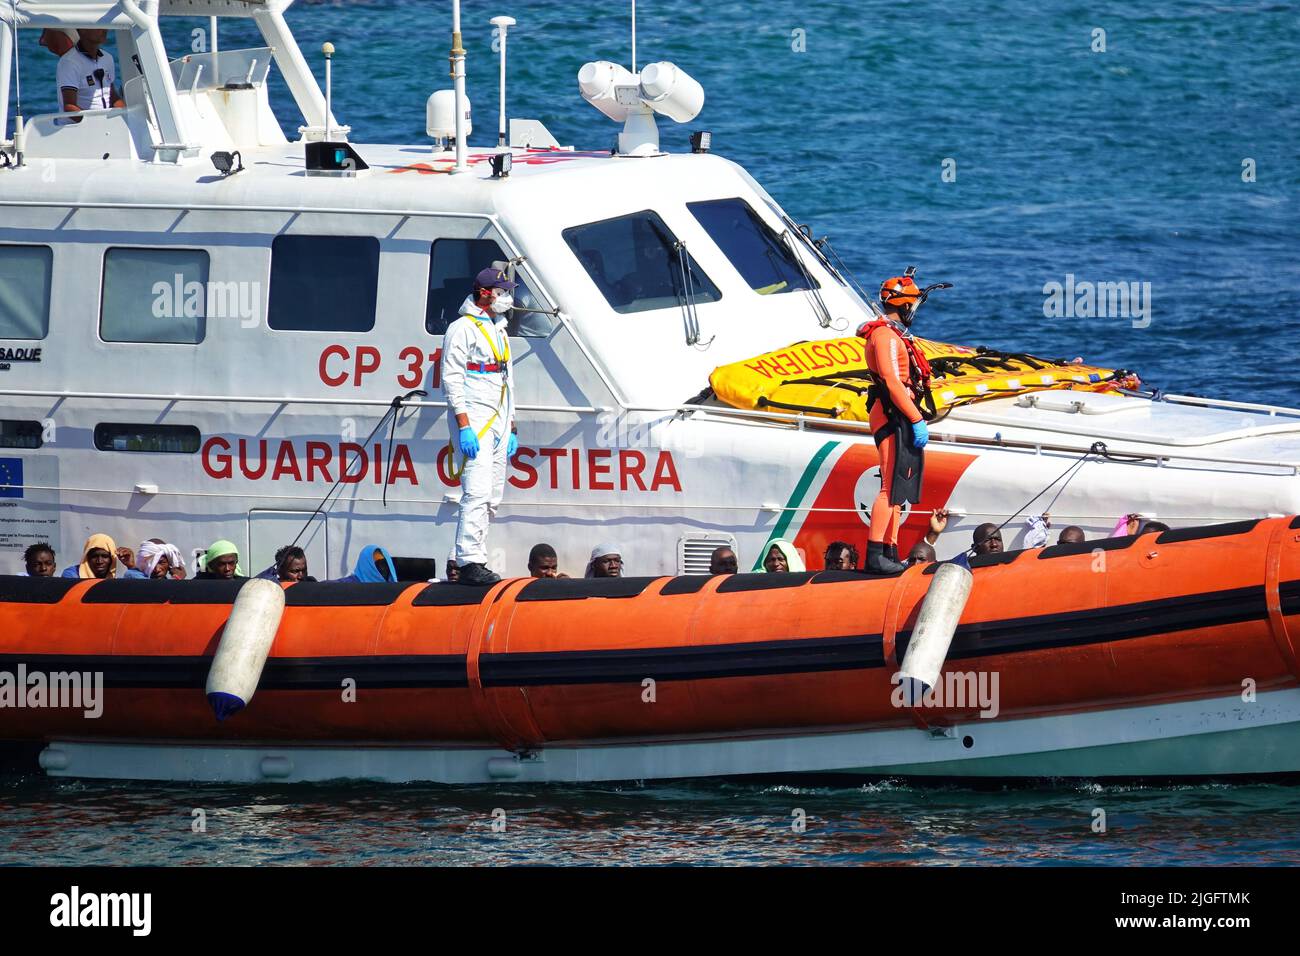 Illegale Einwanderer aus Afrika, die von Küstenwache gerettet wurden, kommen im Hafen an. Lampedusa, Italien - September 2019 Stockfoto